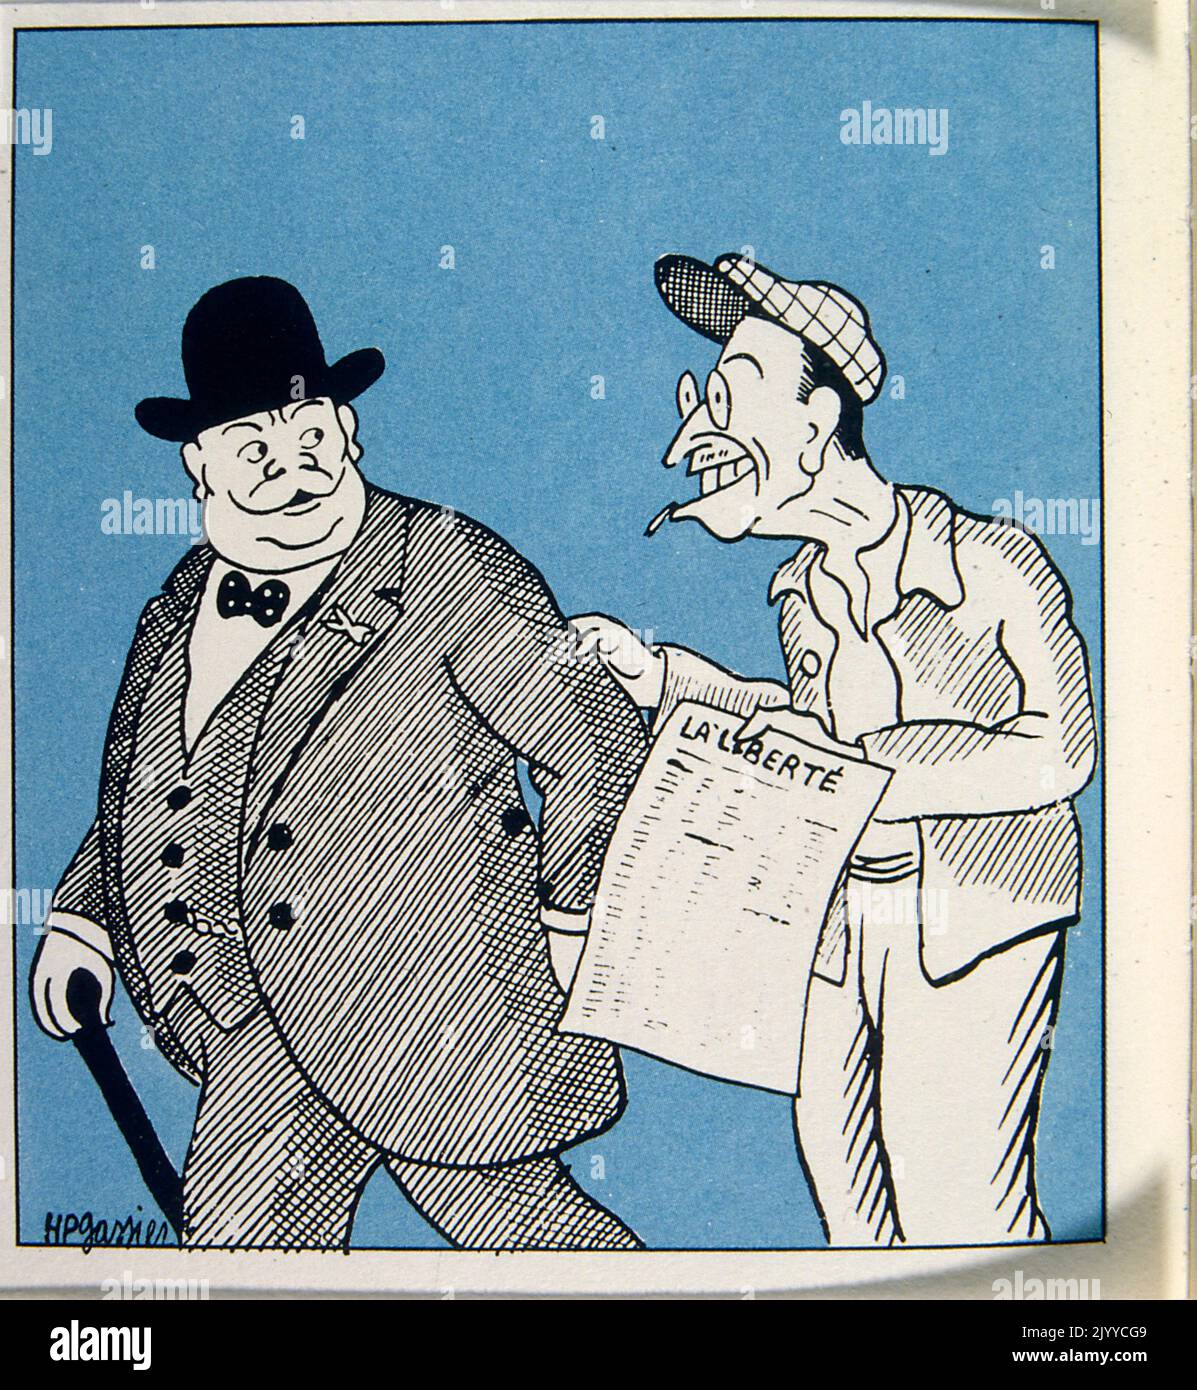 Tinte Illustration von zwei Männern, die zusammen gehen. Einer der Männer zeigt dem anderen die Zeitung La Liberte. Stockfoto